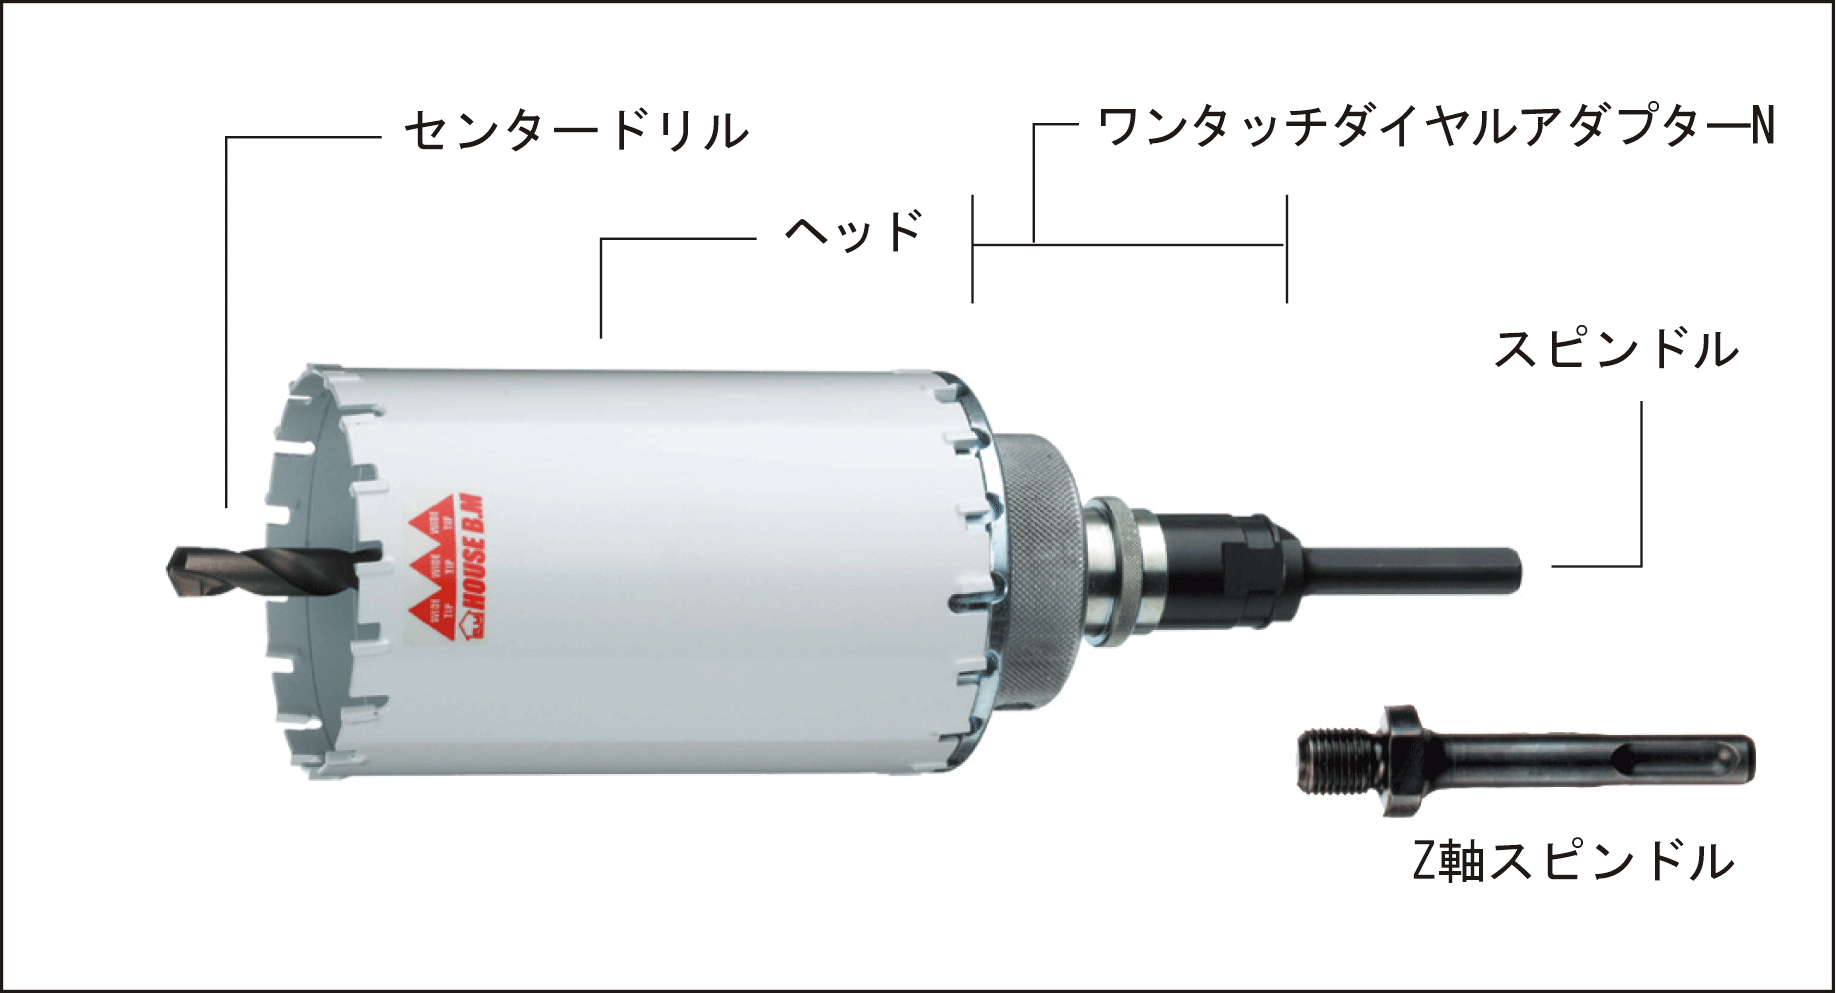 日本最級 ハウスビーエム:インパクトコアドリル HRB(ボディ) 型式:HRB-55 金物、部品 ENTEIDRICOCAMPANO